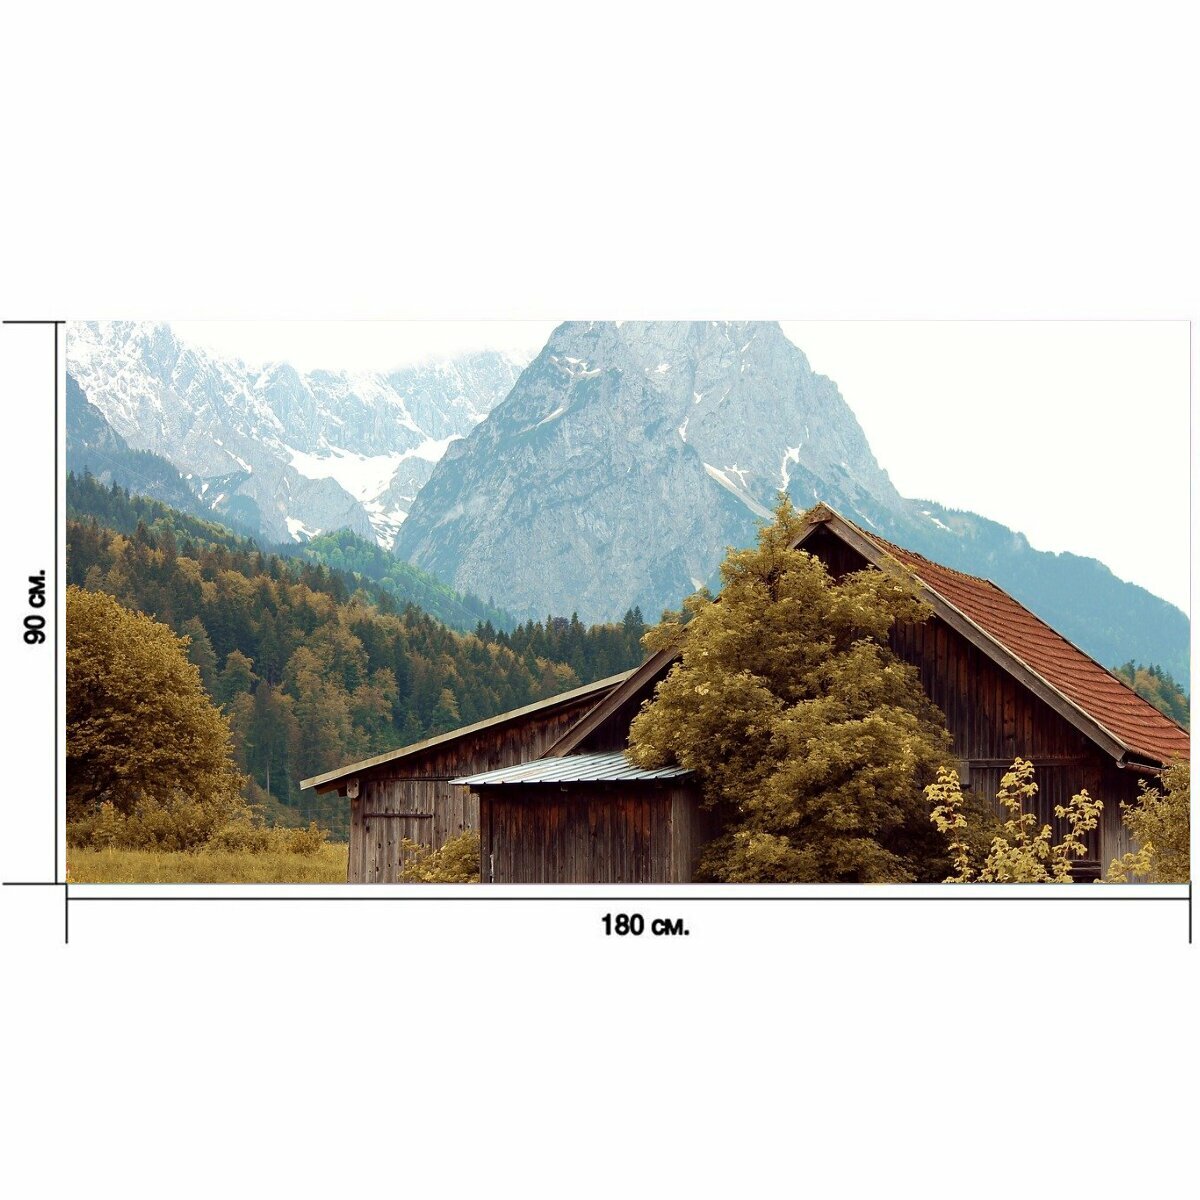 Большой постер "Хижина, деревянная хижина, подкладка коттедж" 180 x 90 см. для интерьера